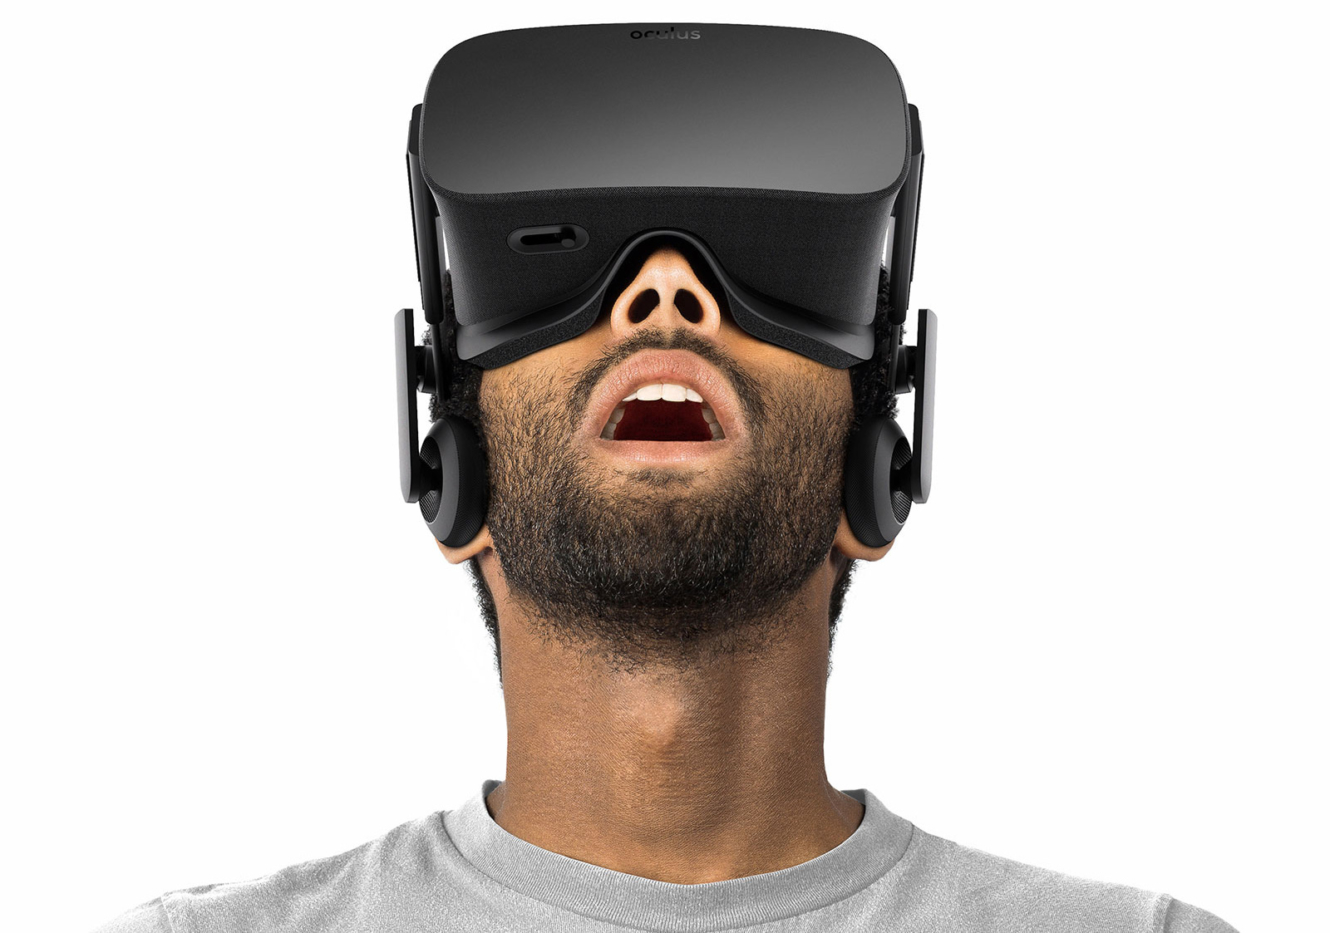 Image of Oculus Rift Virtual Reality